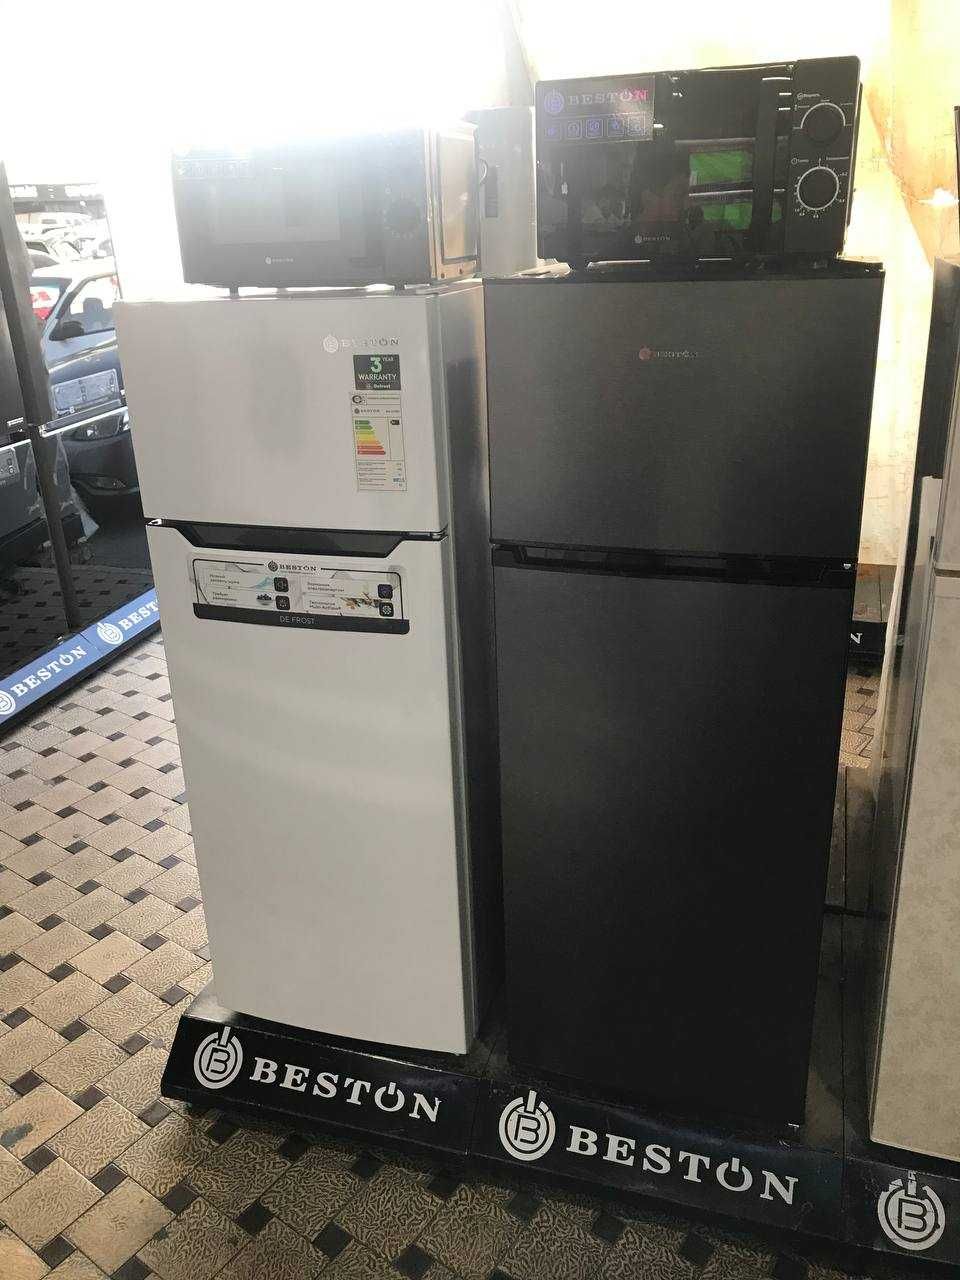 Холодильник 205L BESTON Модель BD-270WT